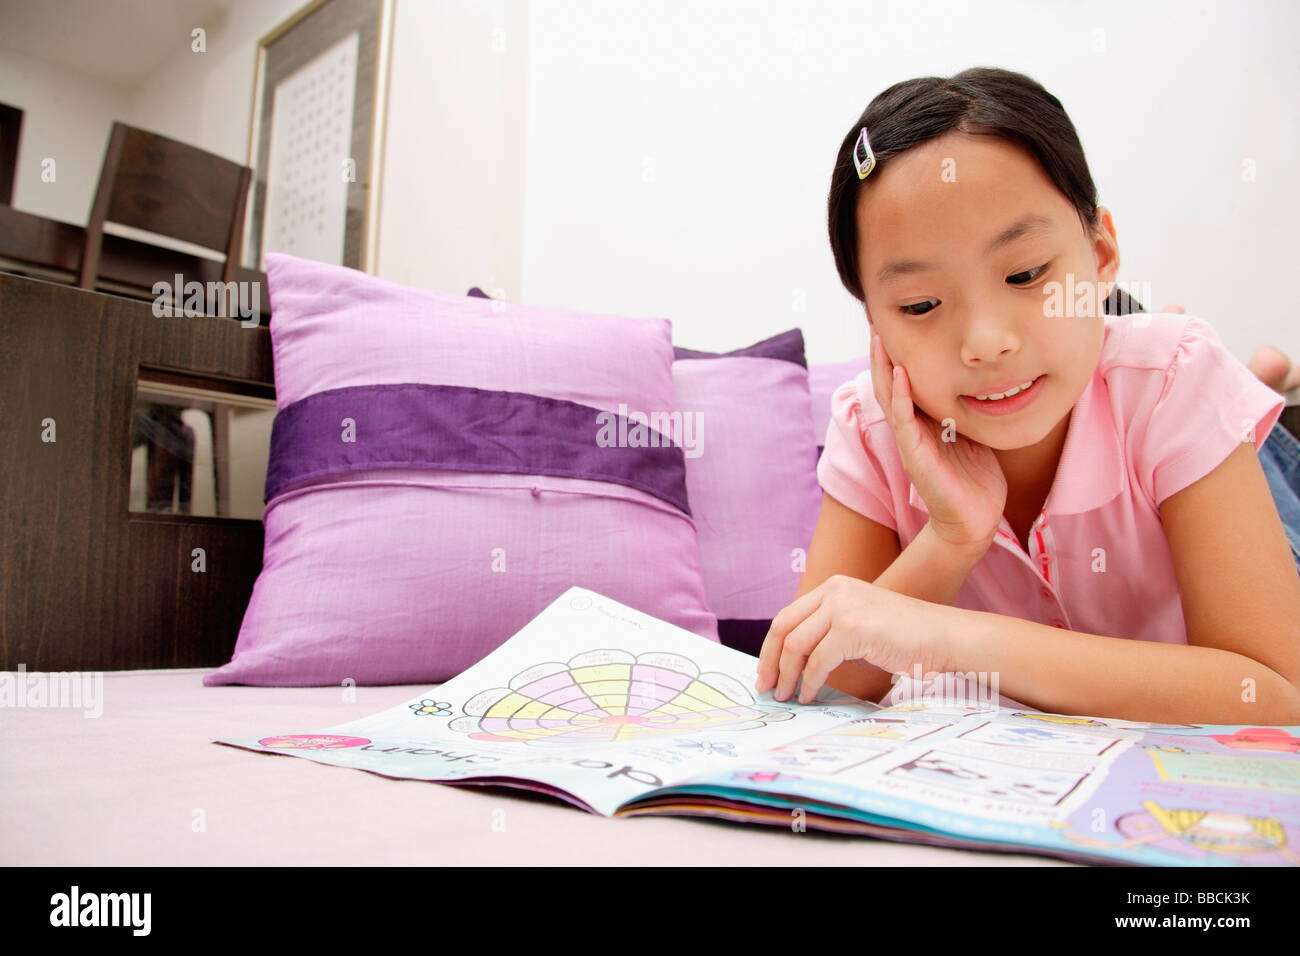 Girl reading magazine, situé sur l'avant, la main sur le menton Banque D'Images